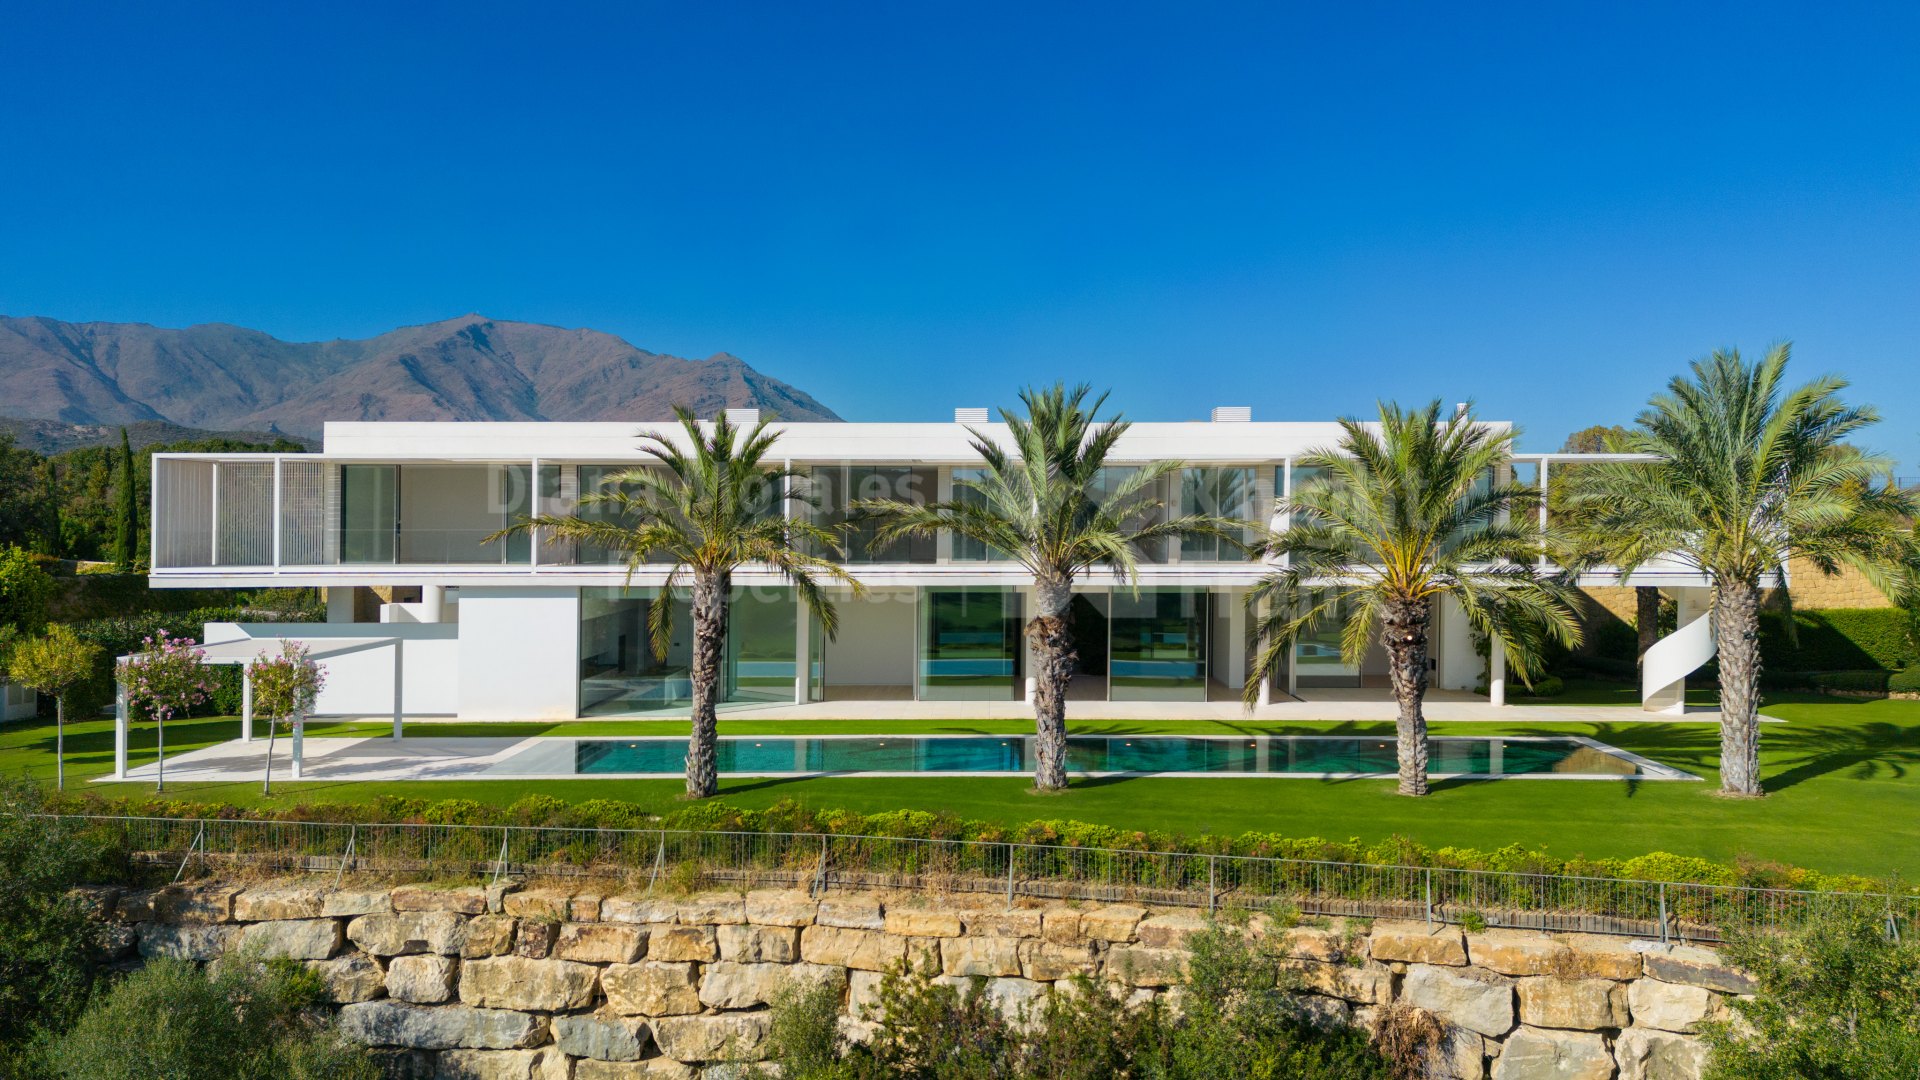 Finca Cortesin, Villa de style minimaliste près du terrain de golf